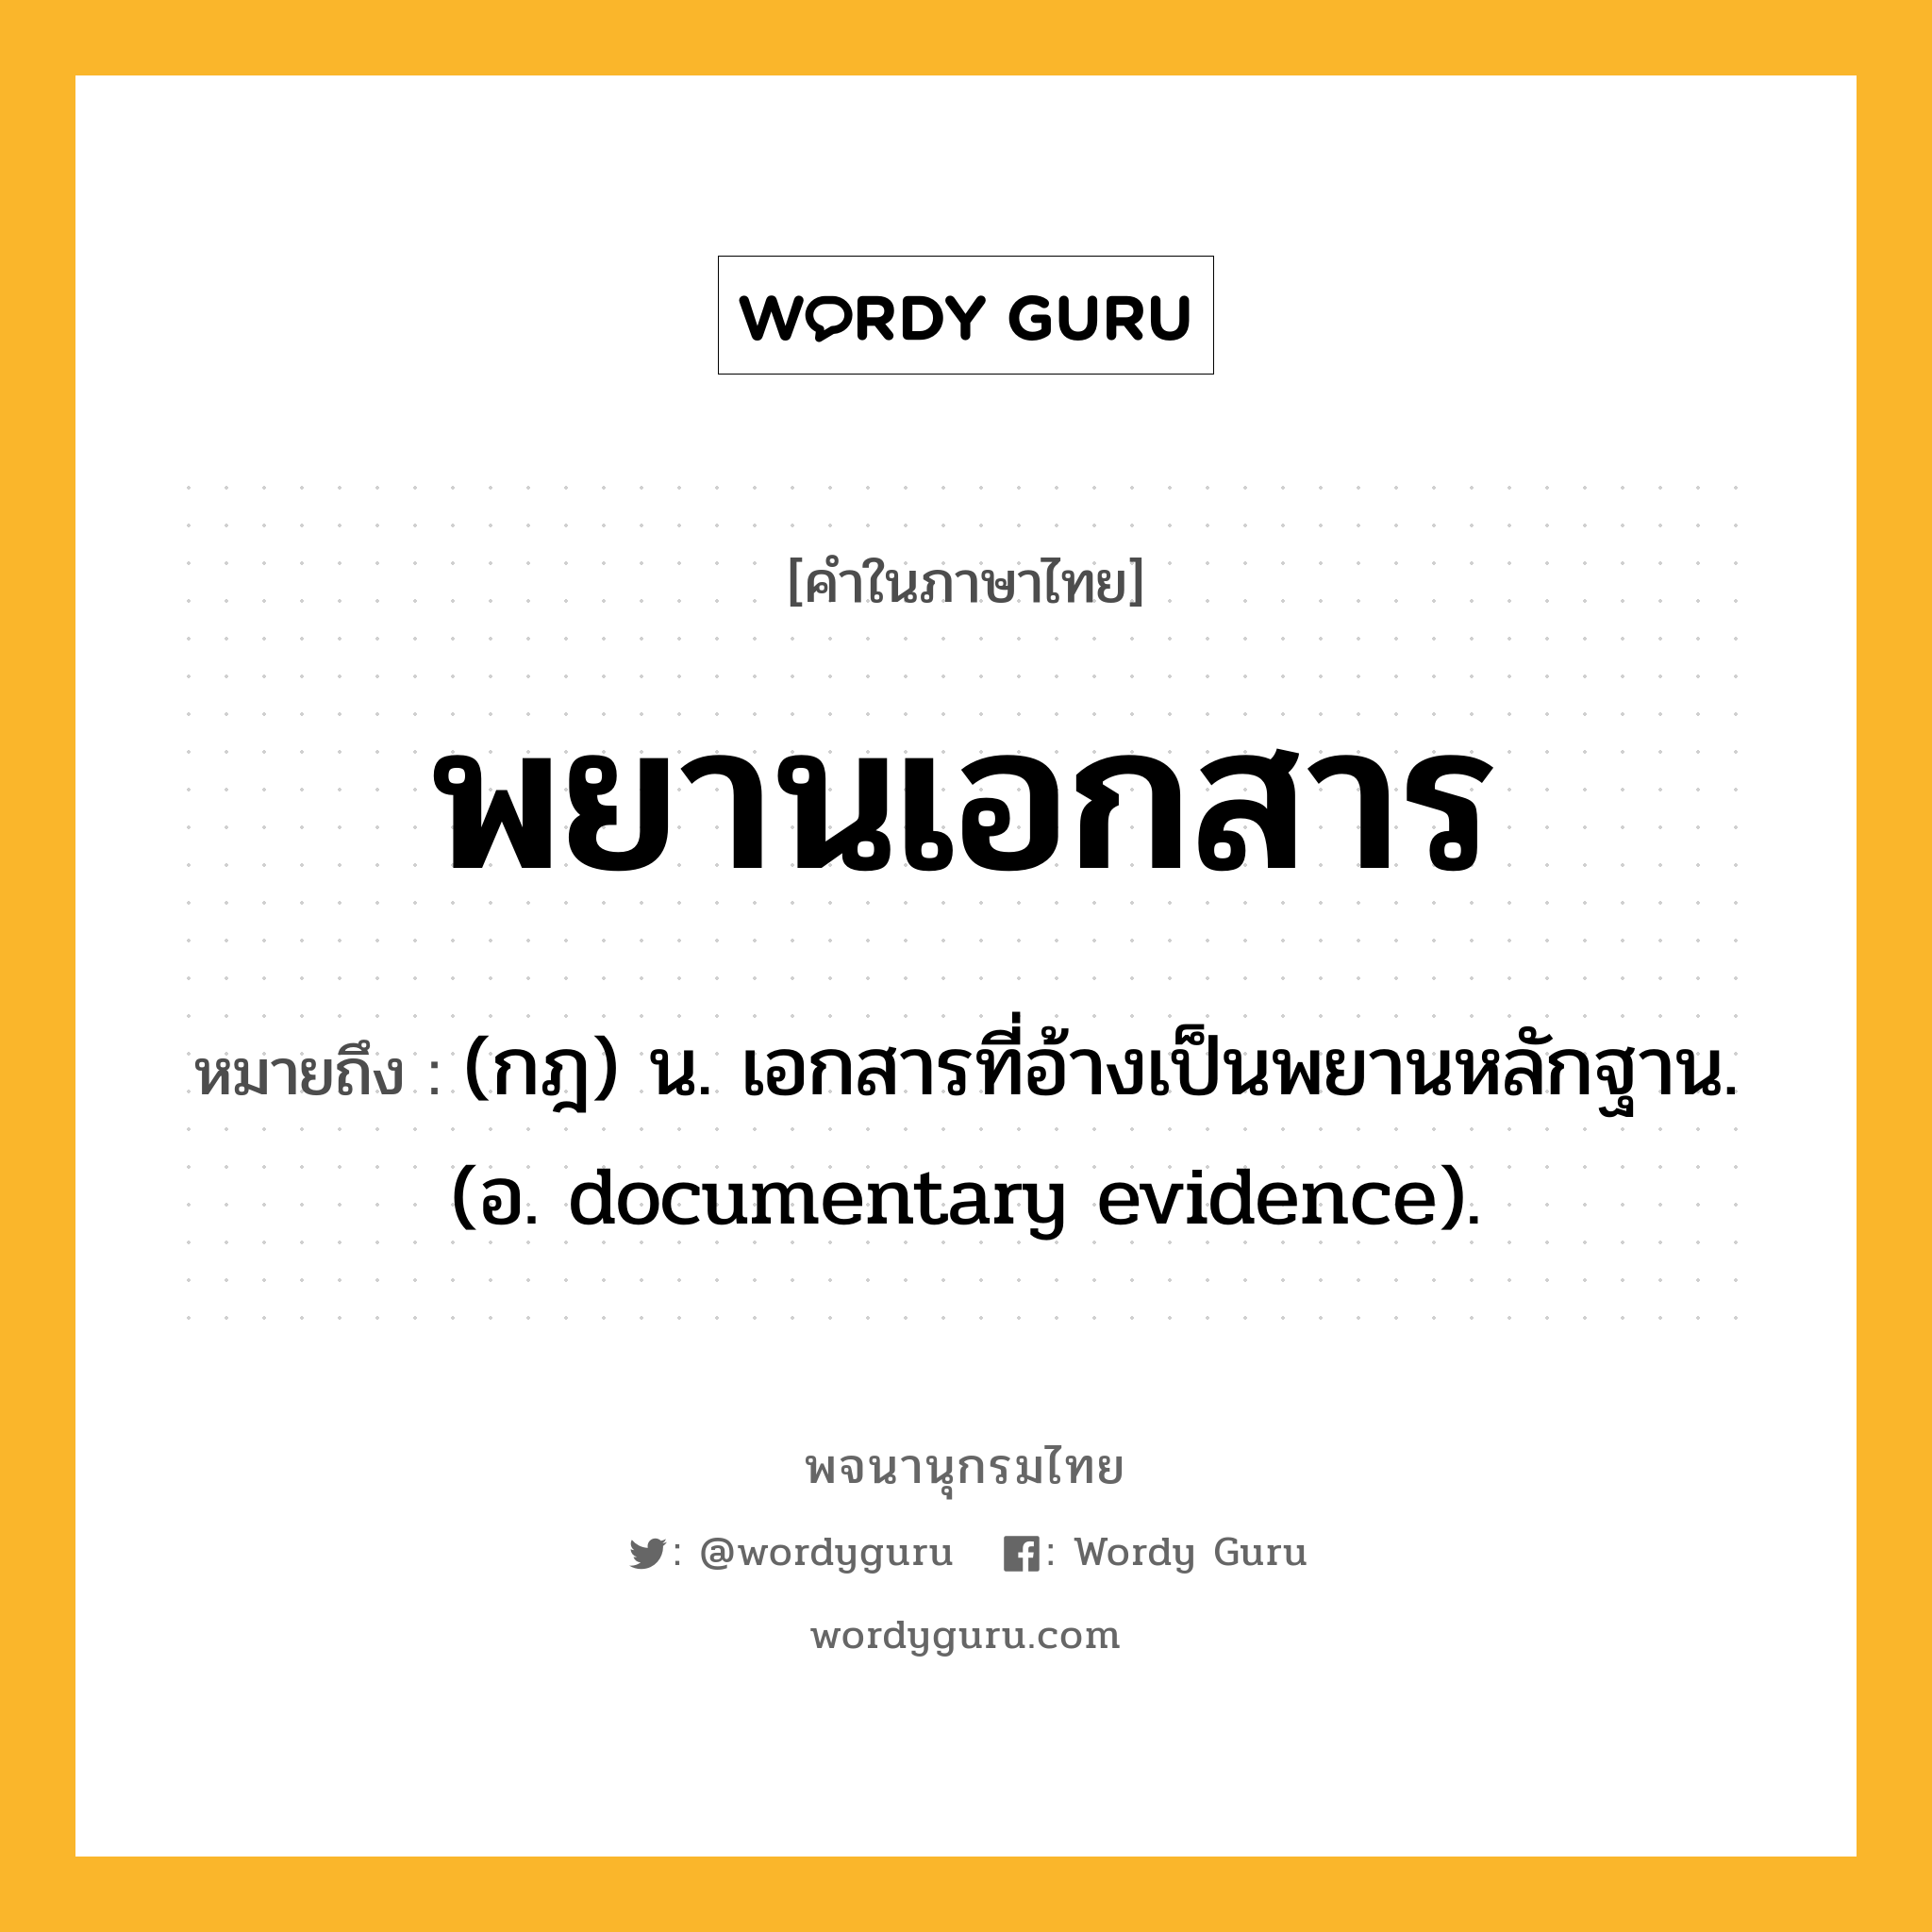 พยานเอกสาร หมายถึงอะไร?, คำในภาษาไทย พยานเอกสาร หมายถึง (กฎ) น. เอกสารที่อ้างเป็นพยานหลักฐาน. (อ. documentary evidence).